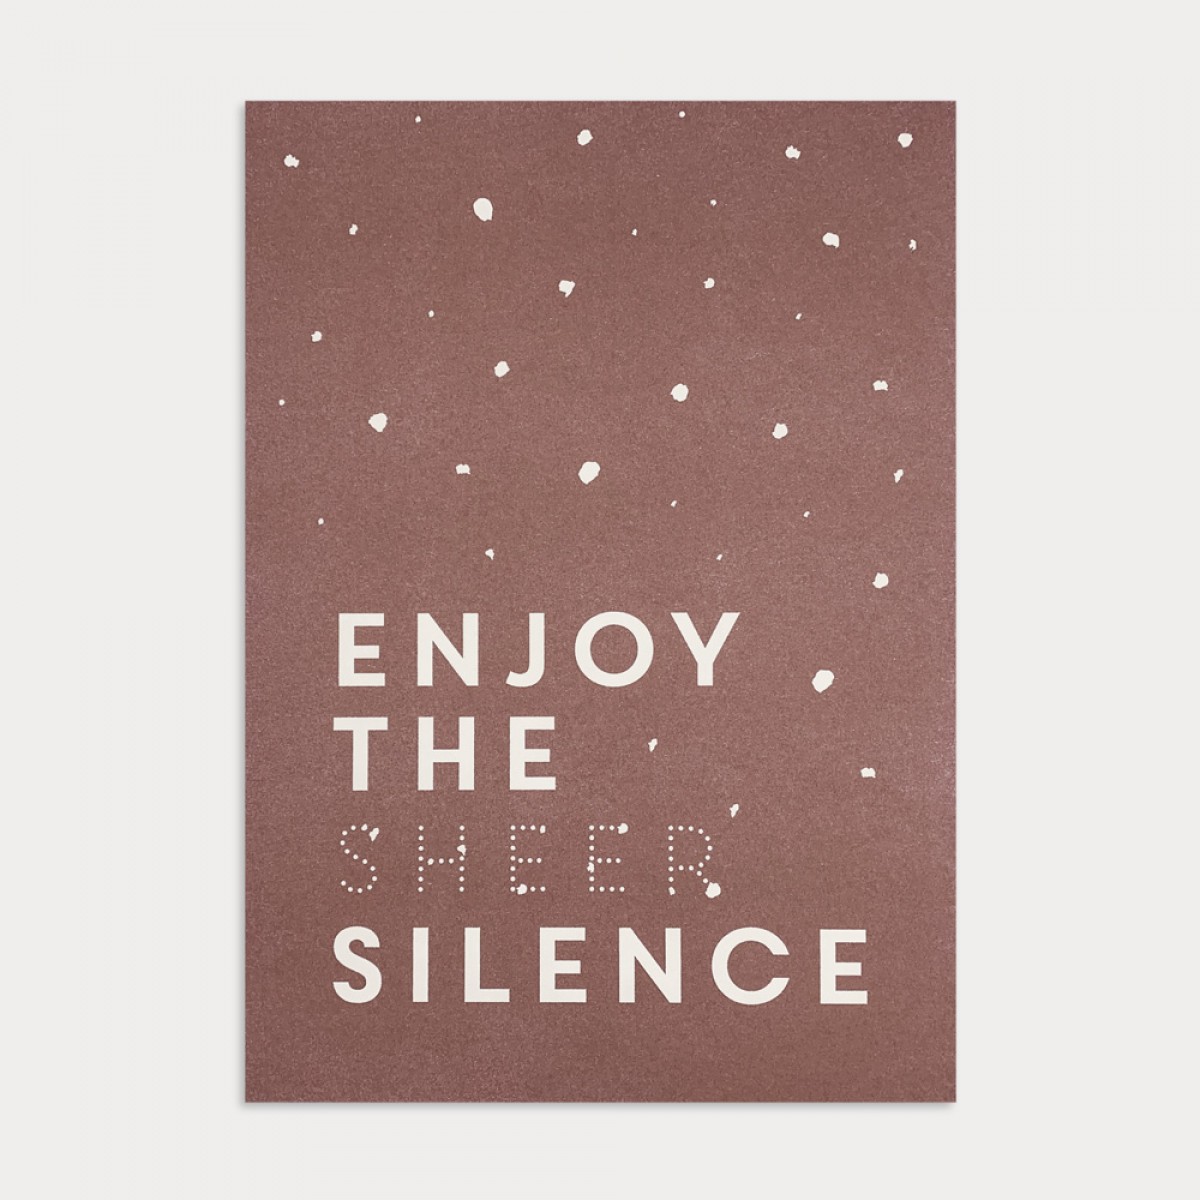 Feingeladen / KARAOKE INSPIRED / Enjoy the sheer Silence / A5